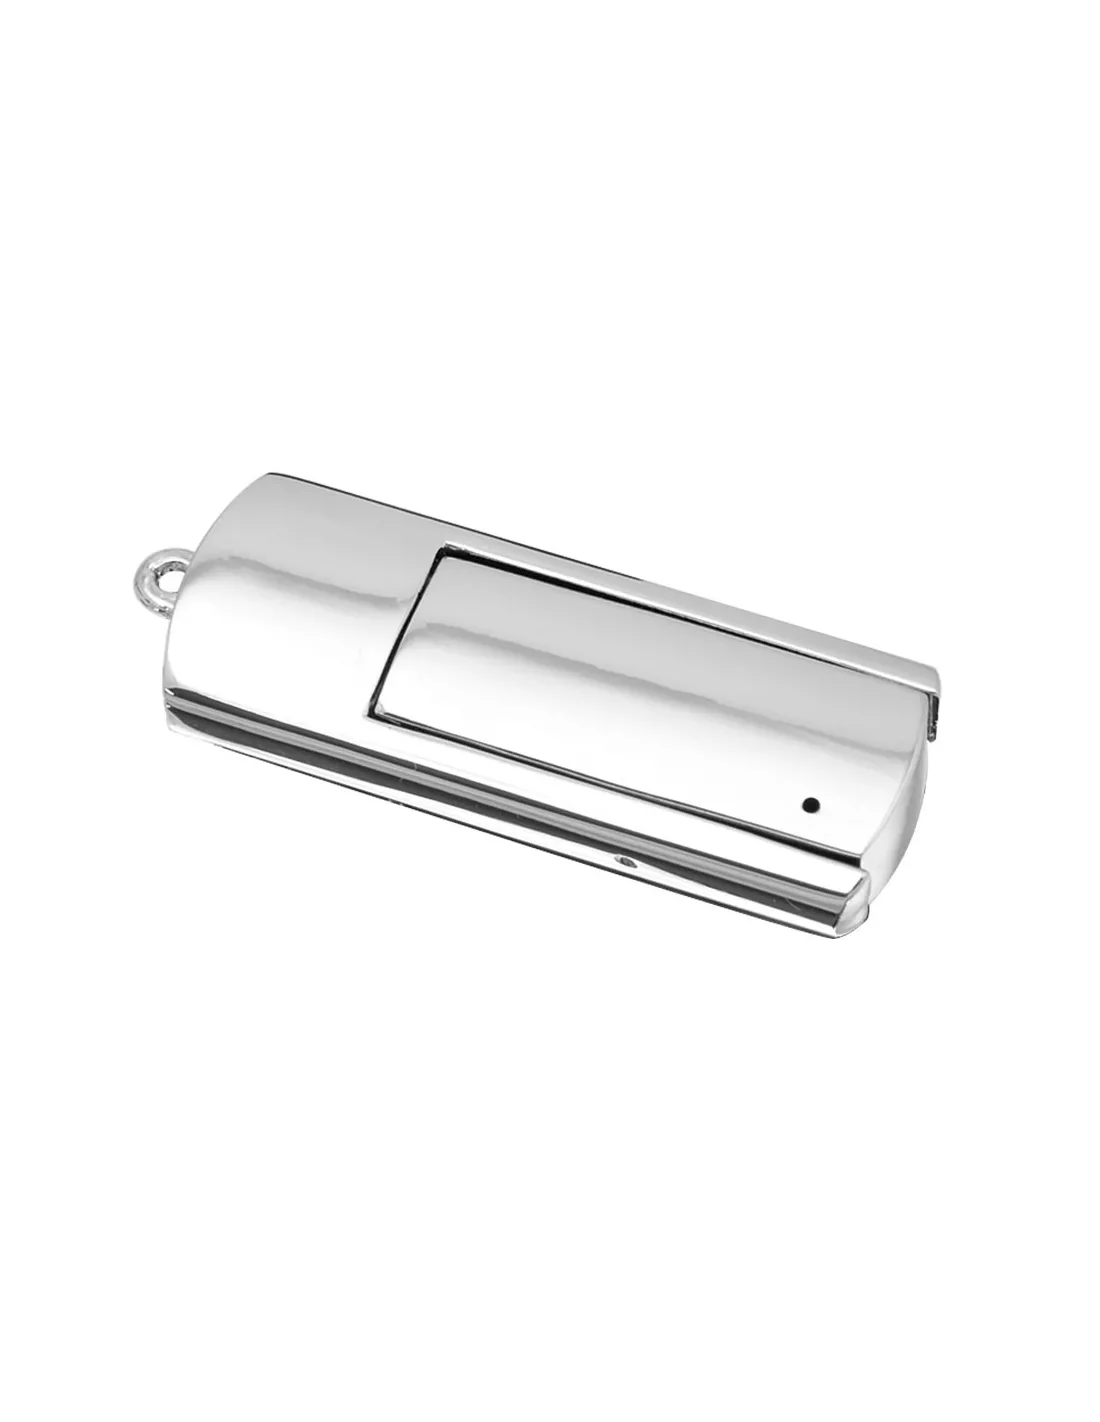 Pendrive USB plegable con acabado metálico Krom 16Gb Presentada en elegante estuche individual de cartón y espuma